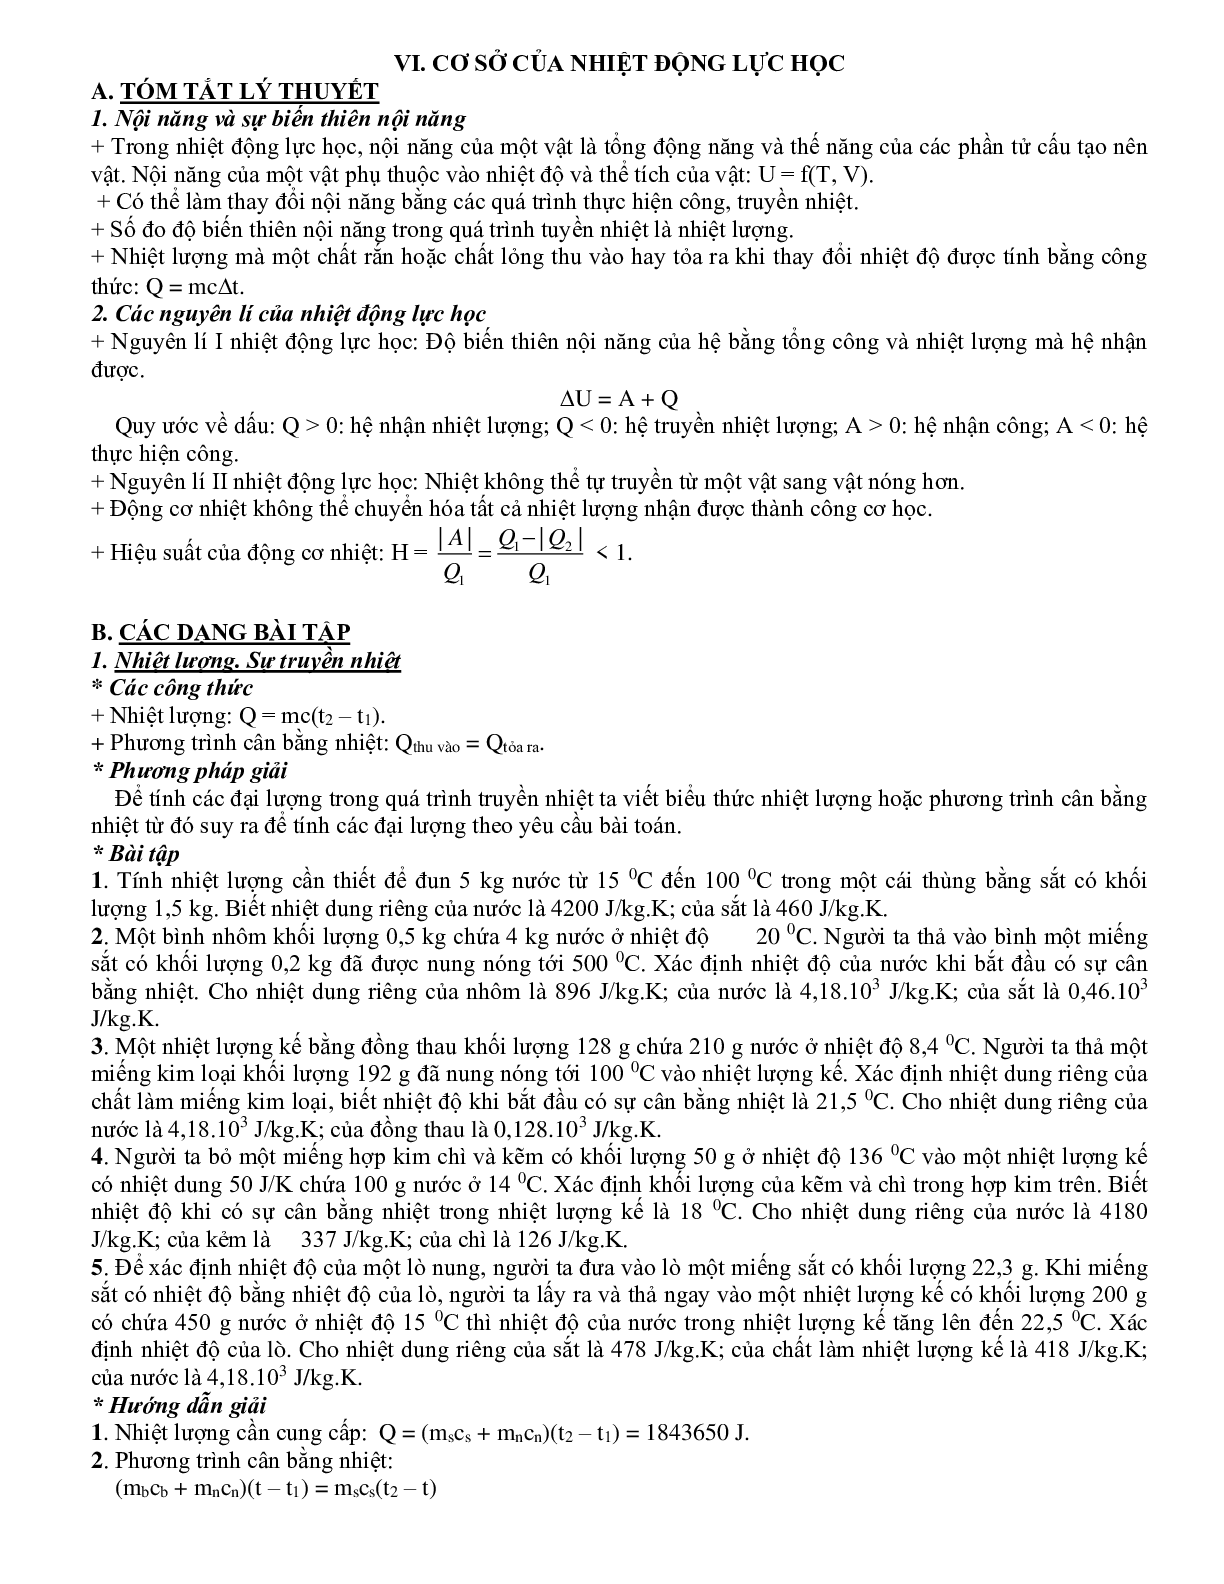 Chuyên đề Cơ sở của nhiệt động lực học môn Vật lý lớp 10 (trang 1)